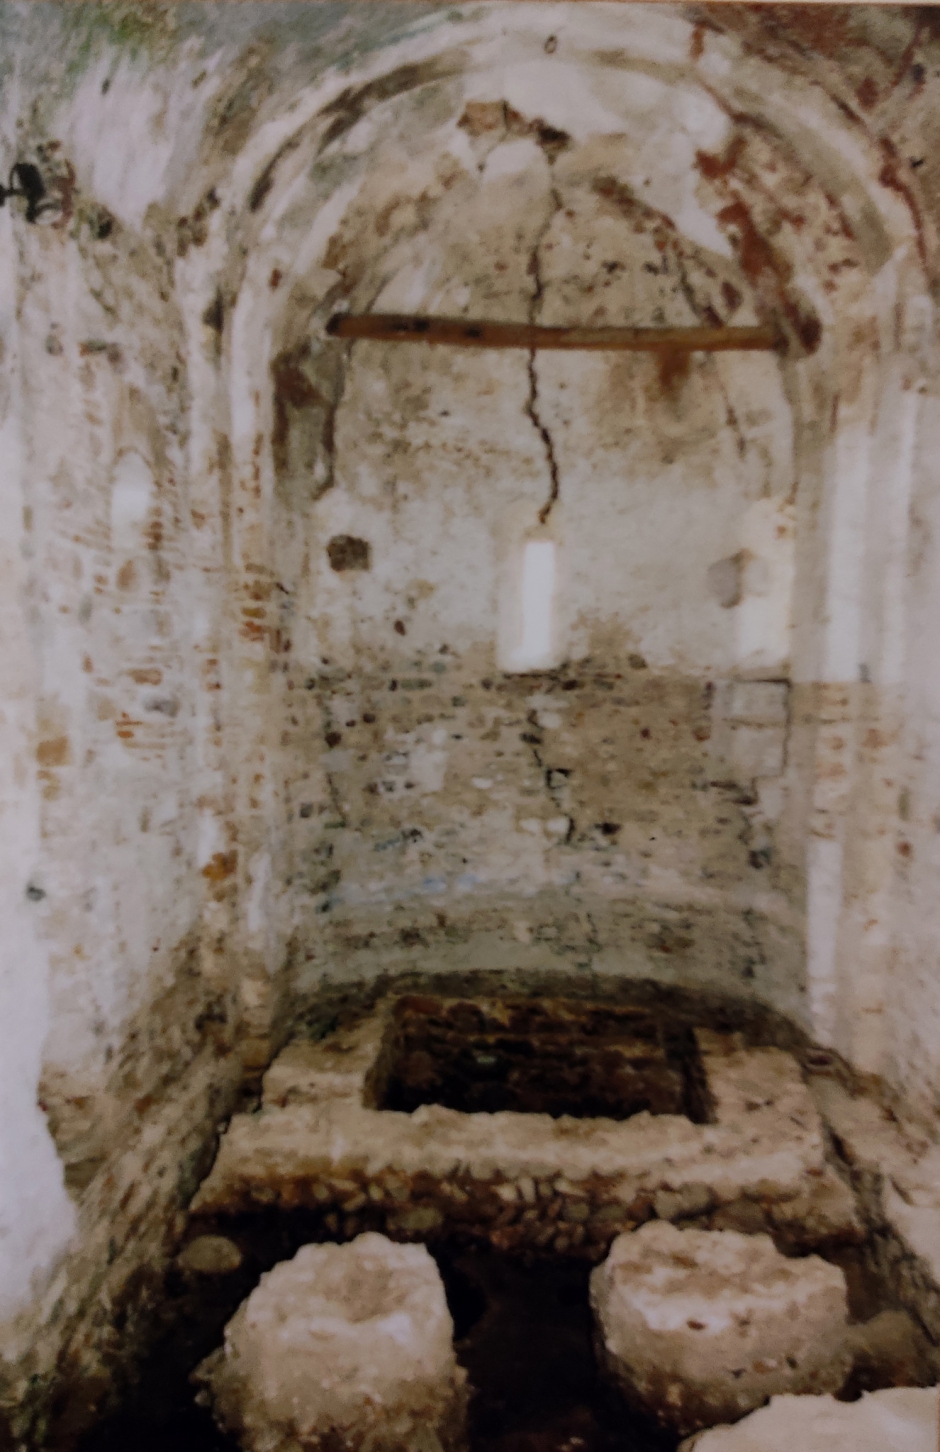 L'absis de l'església preromànica (segle X). Foto extreta dels plafons explicatius que hi ha a l'interior del temple